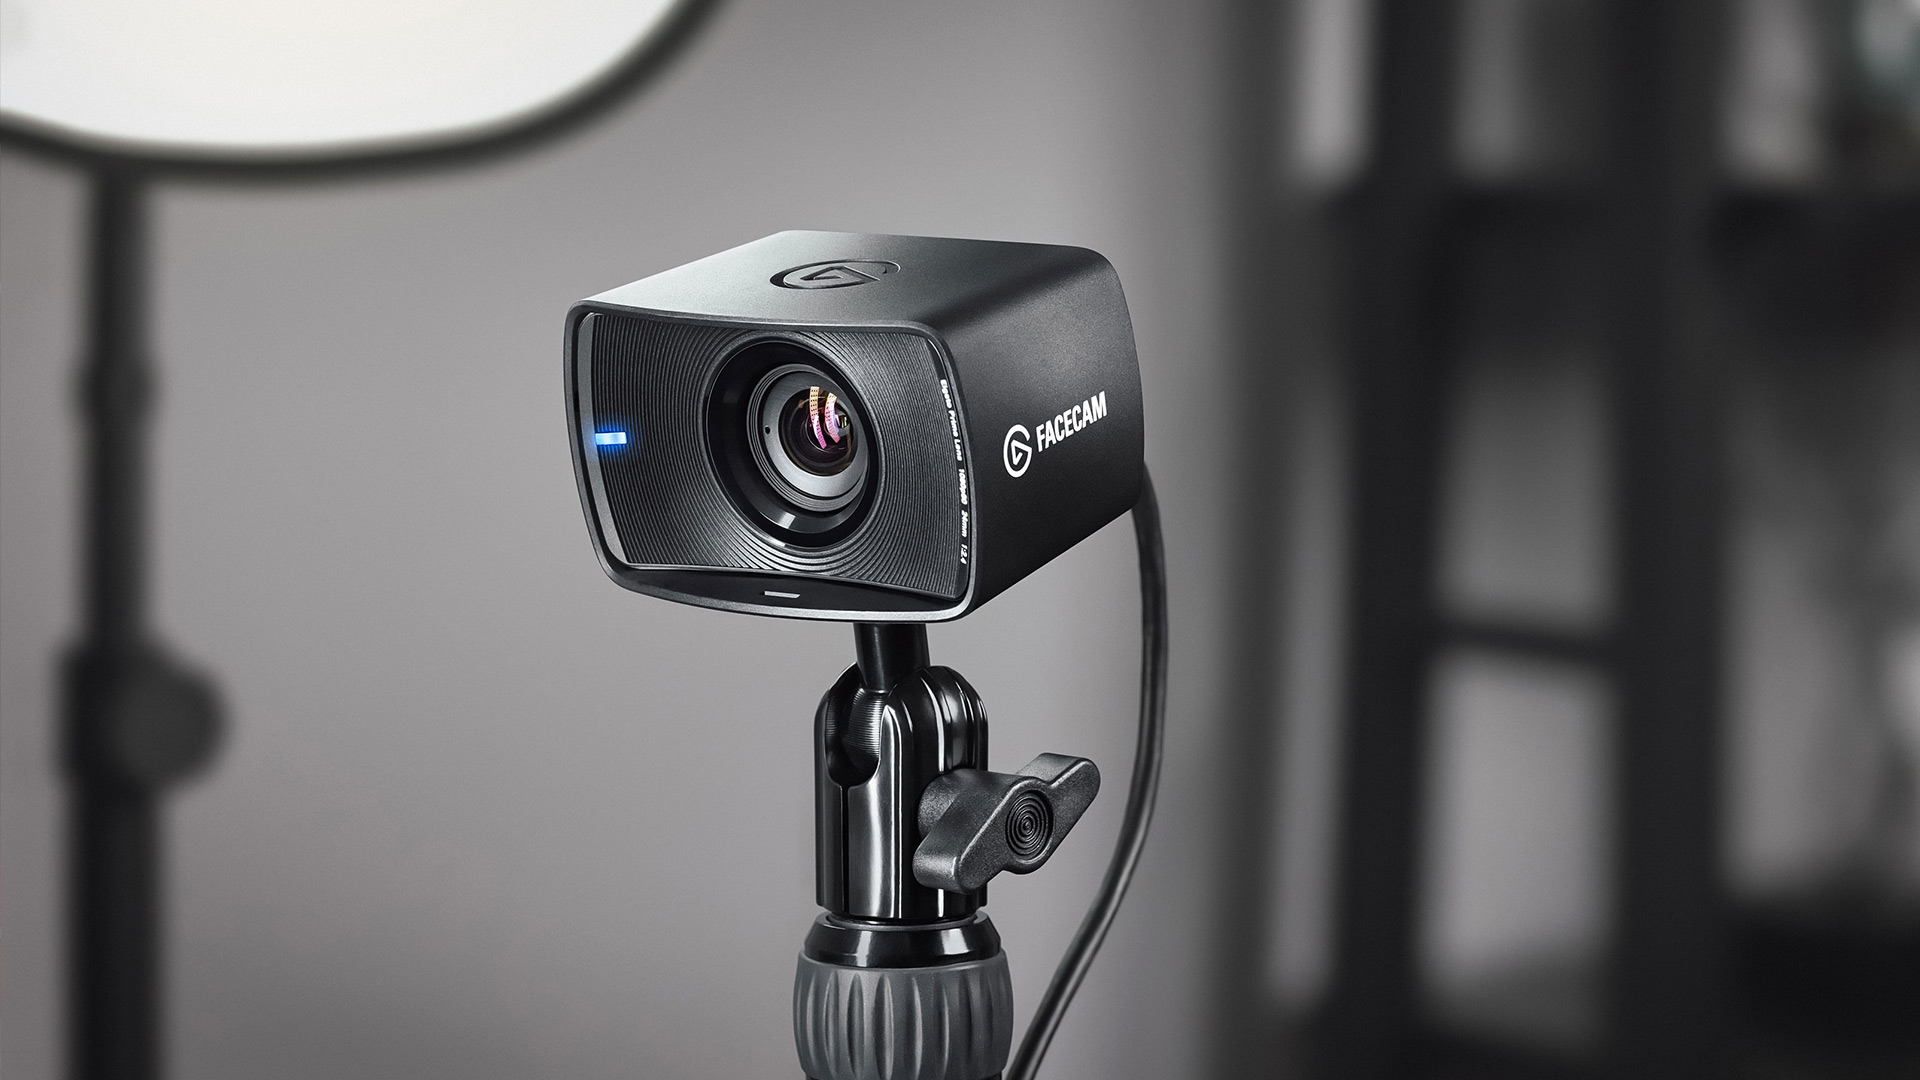 Best webcam for streaming: the Elgato Facecam